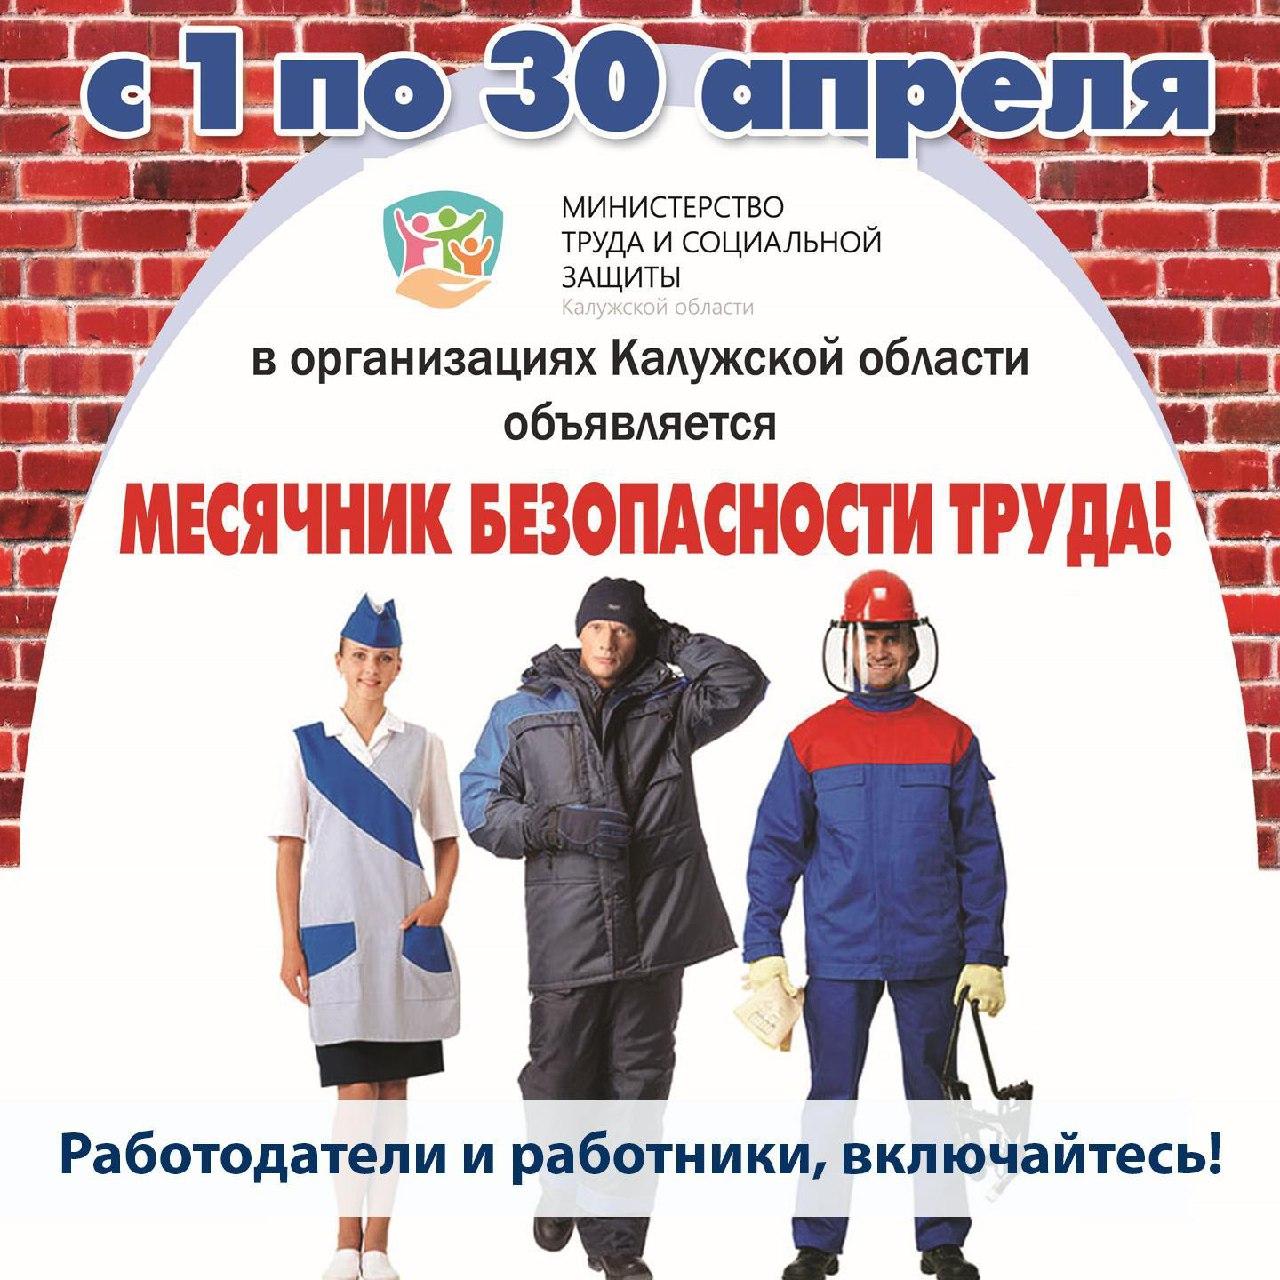 С 1 по 30 апреля в организациях Калужской области пройдет месячник безопасности труда.